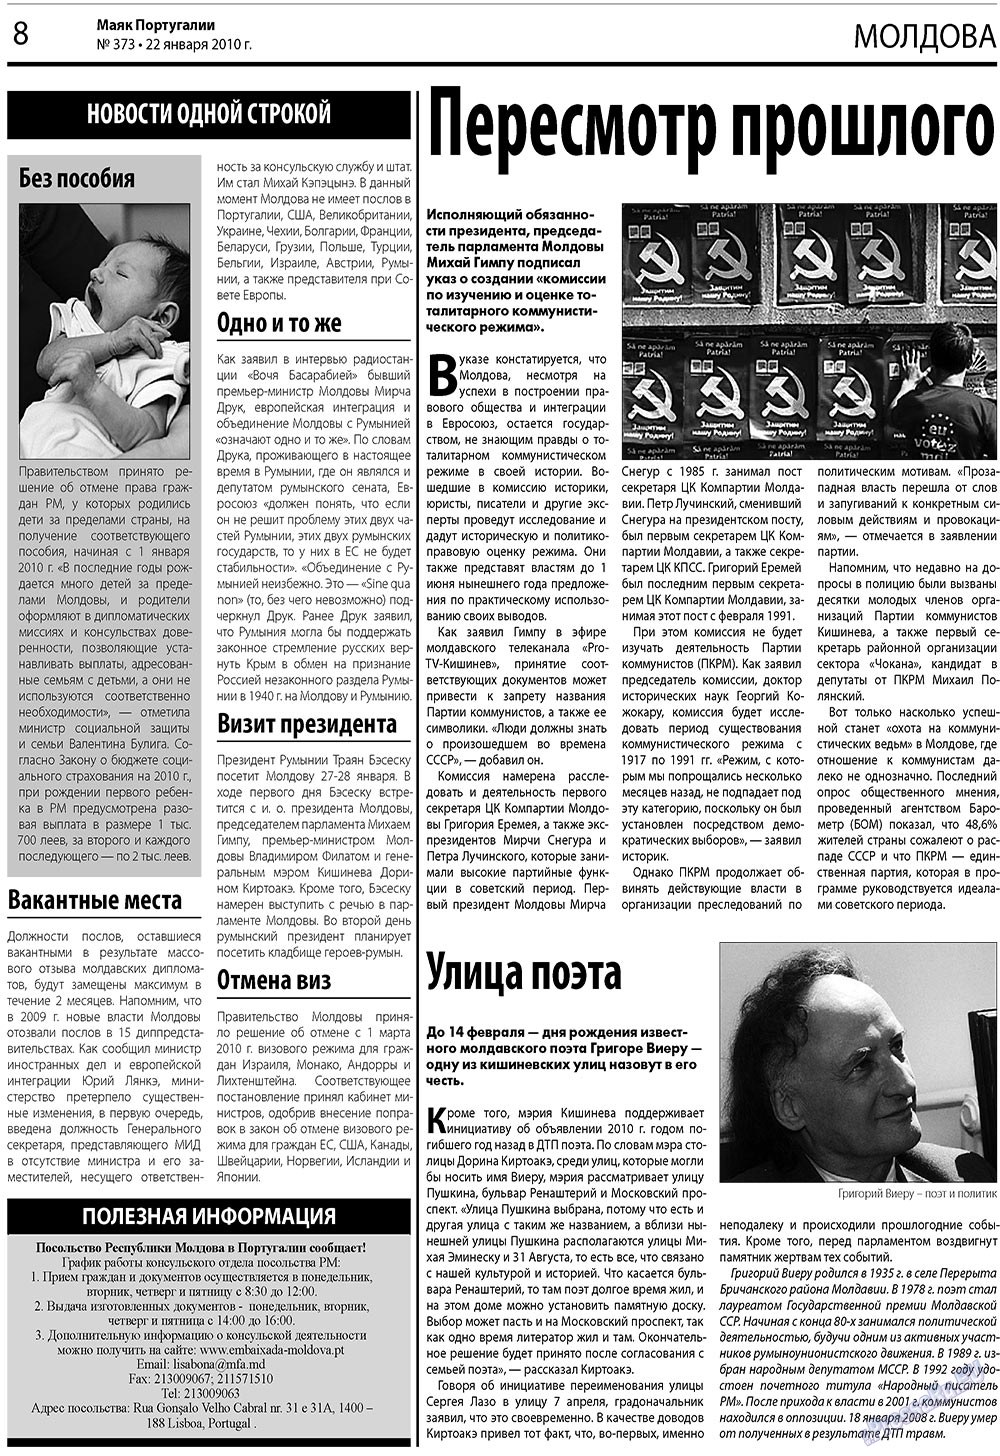 Маяк Португалии (газета). 2010 год, номер 373, стр. 8